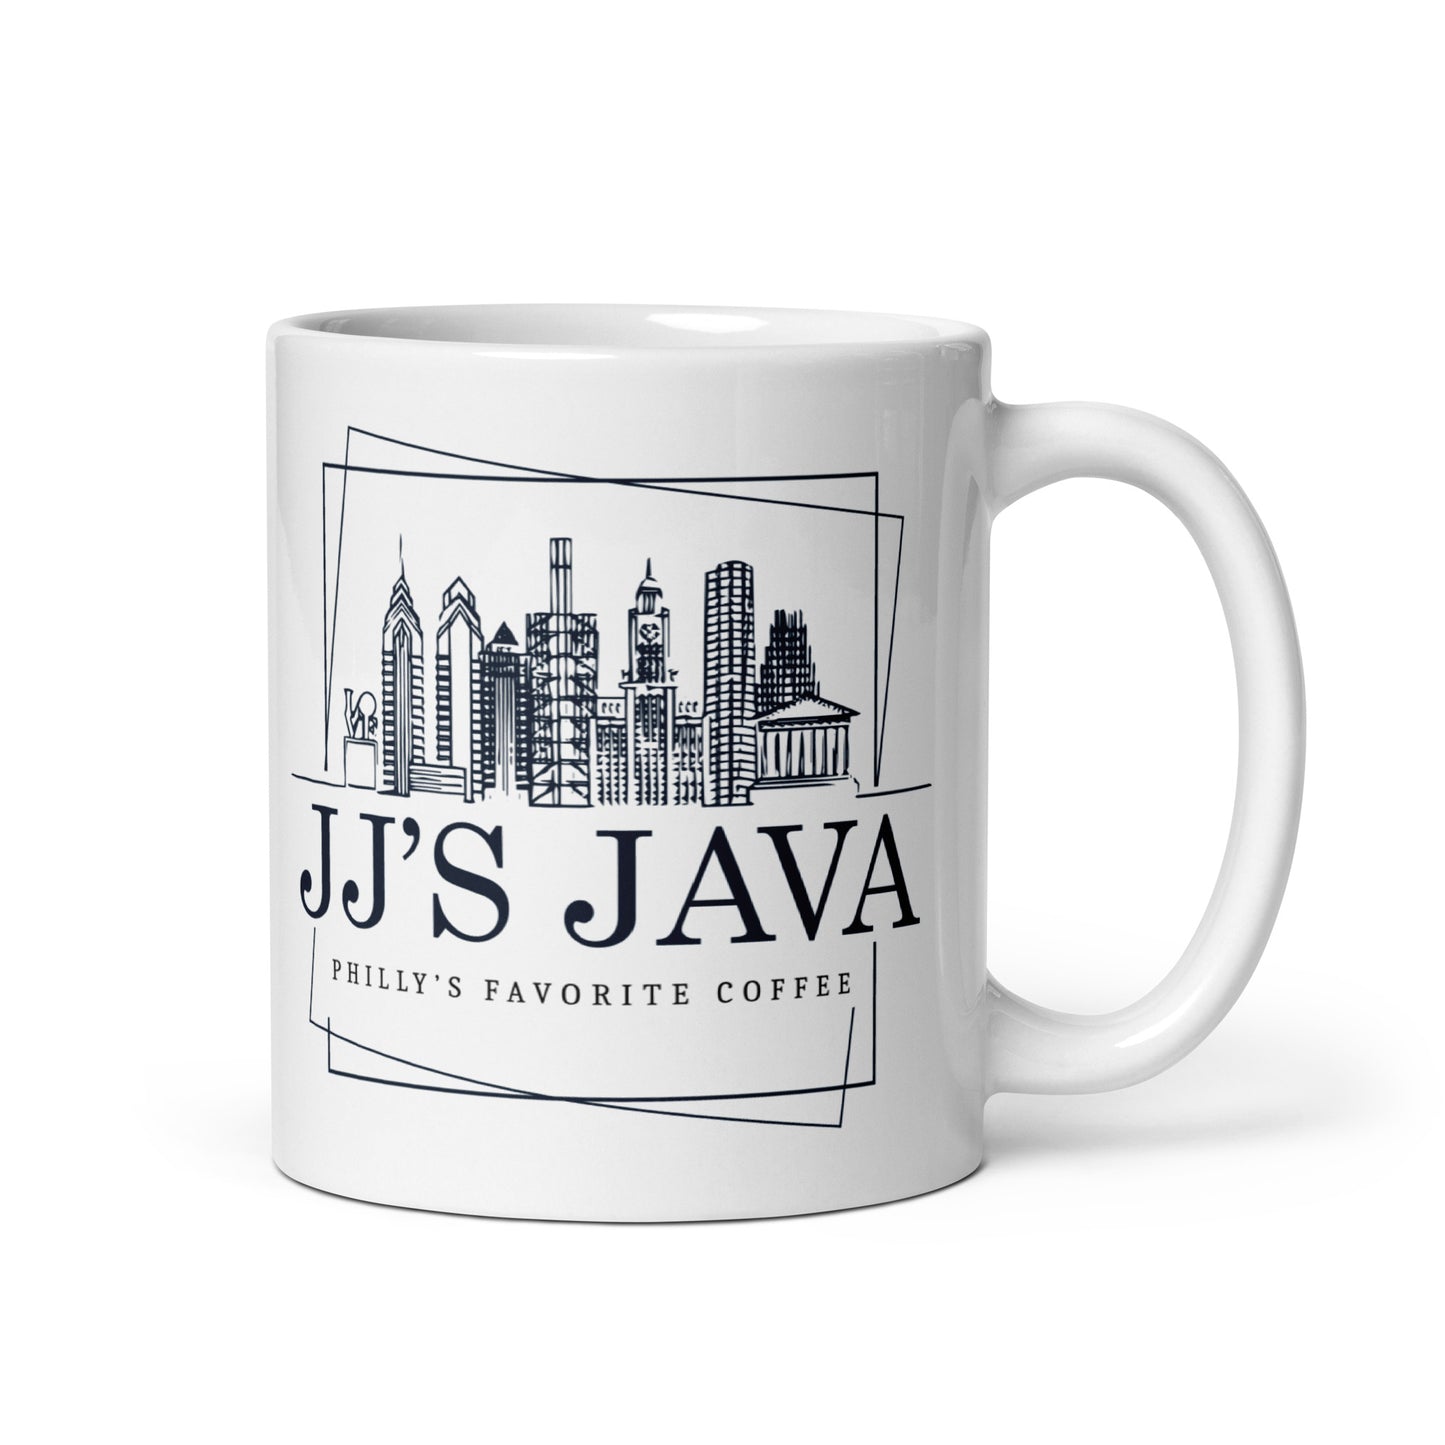 Philly's Favorite Coffee mug